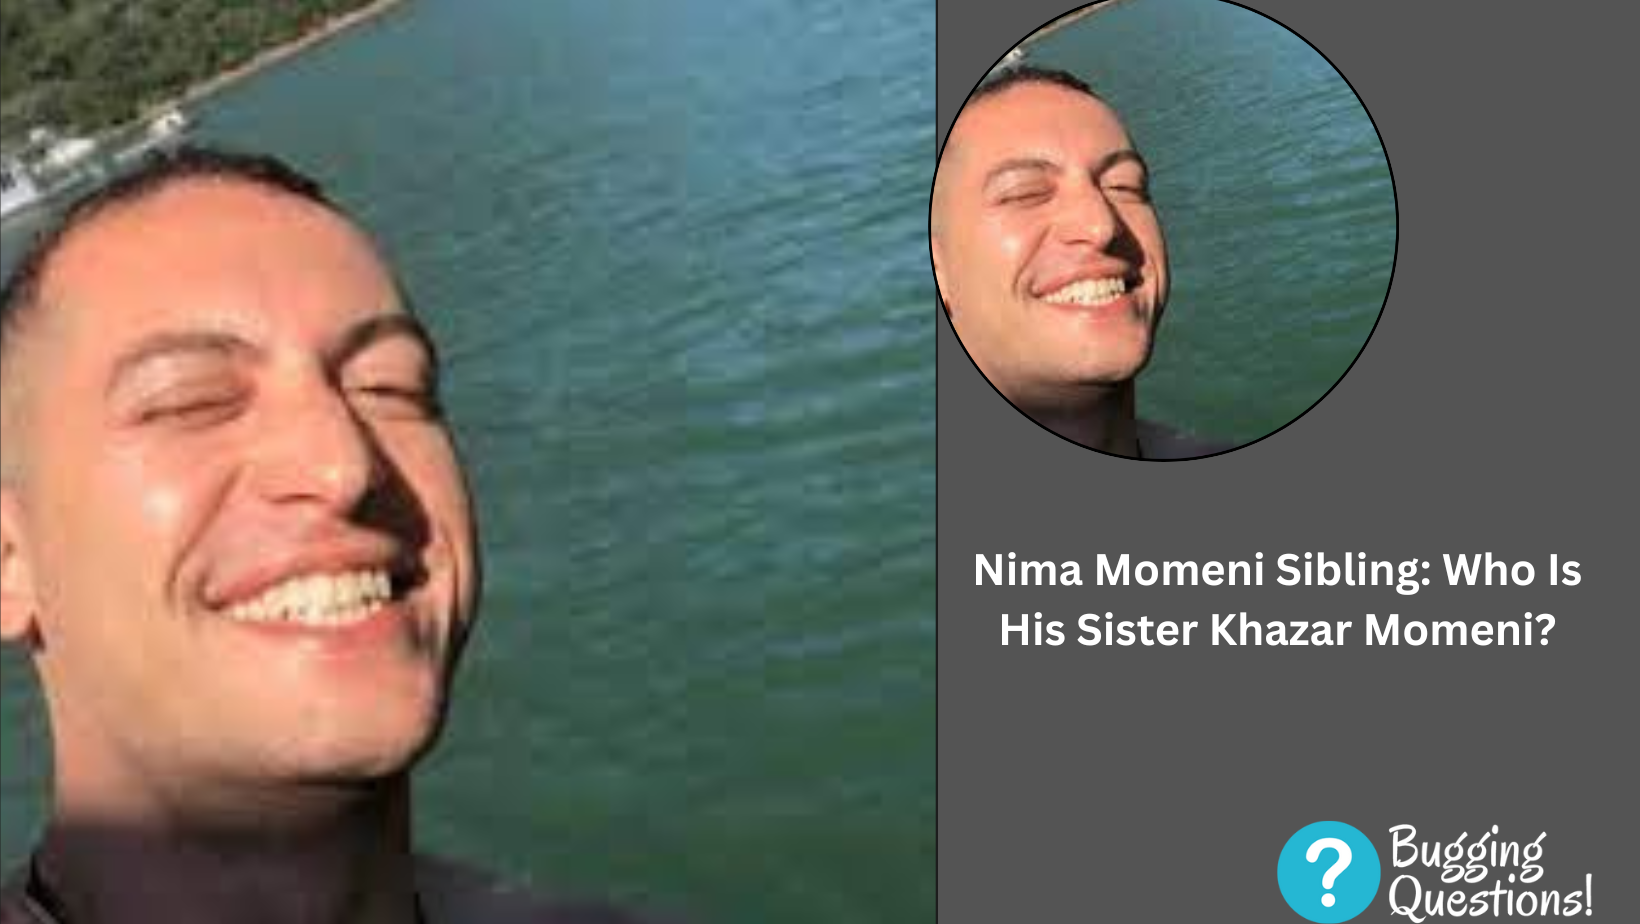 Nima Momeni Sibling: Who Is His Sister Khazar Momeni?